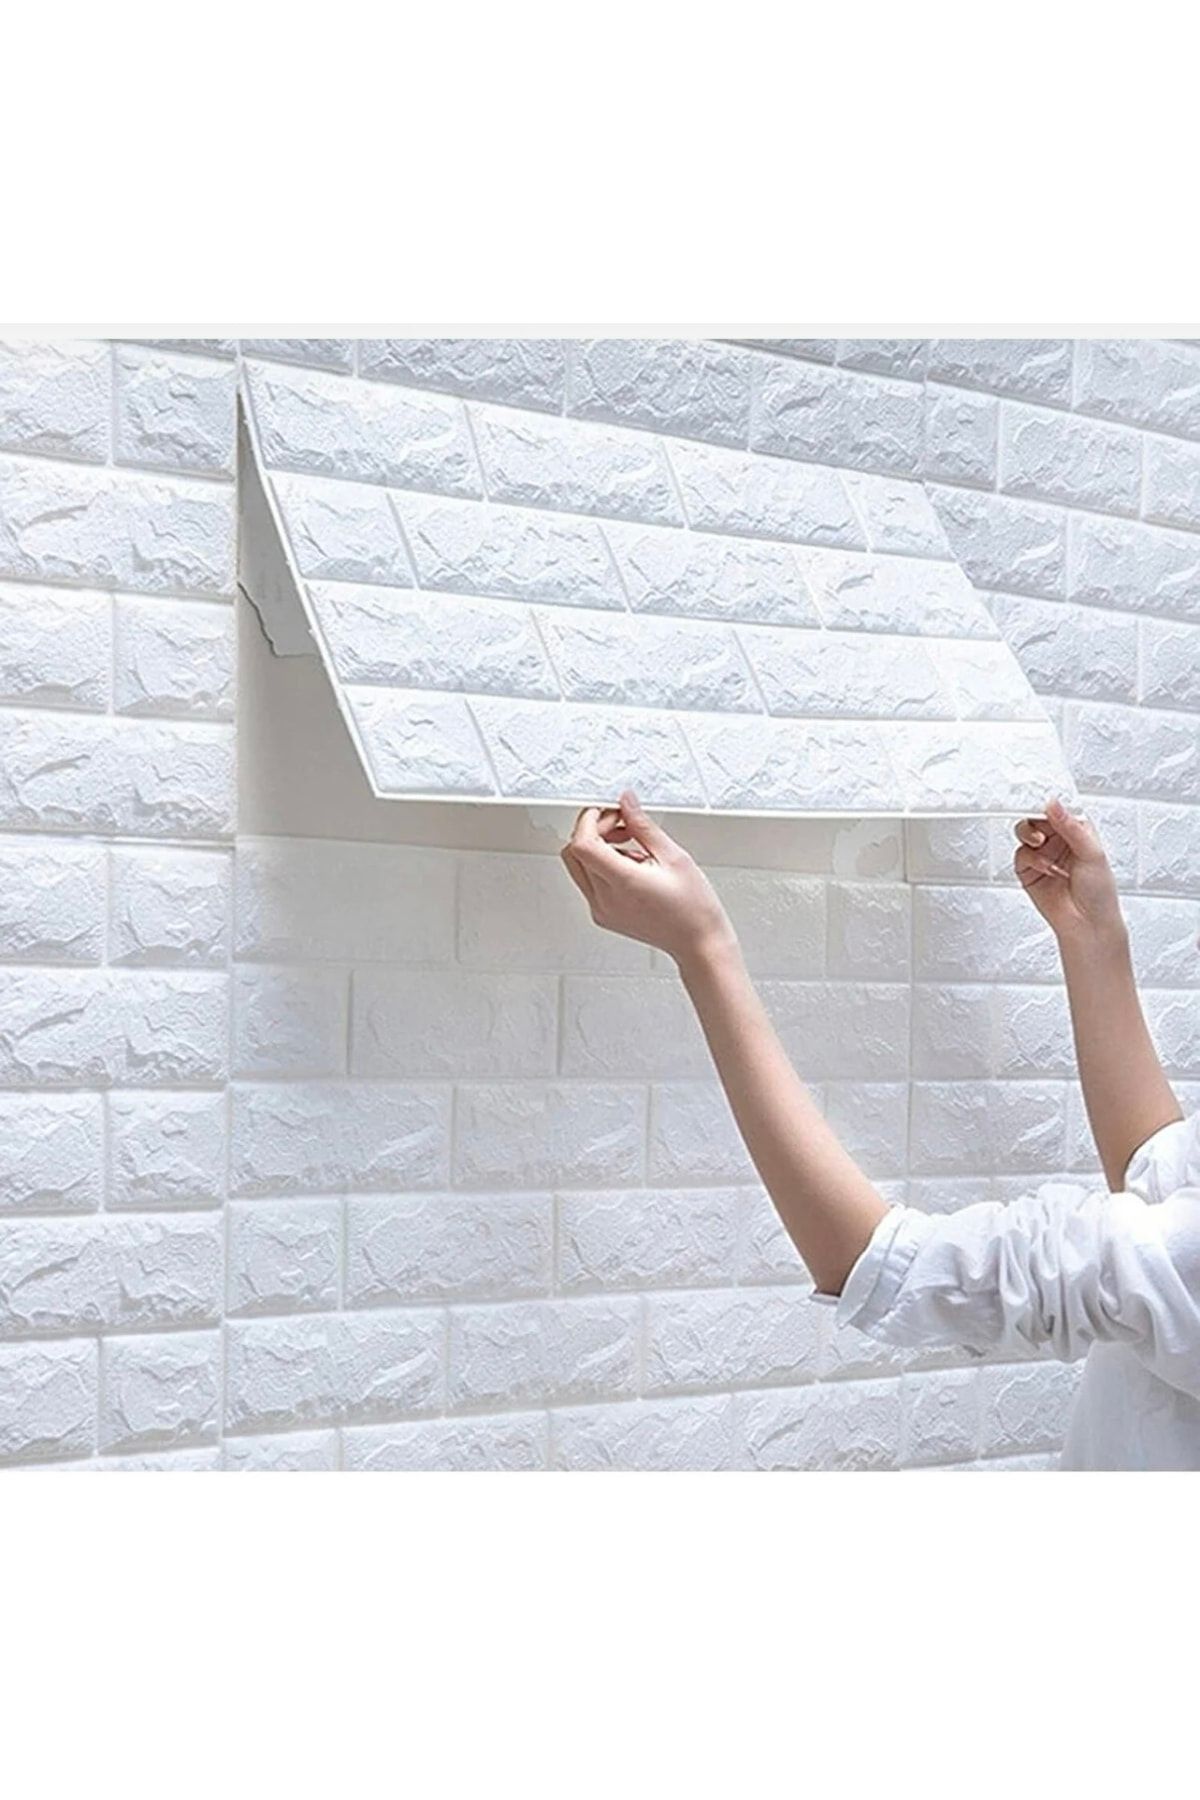 A'PIEU 50x50 Cm 0,27 M² Kendinden Yapışkanlı Duvar Kağıdı Esnek Köpük Paneli 3d Boyutlu Tuğla Desen Beyaz